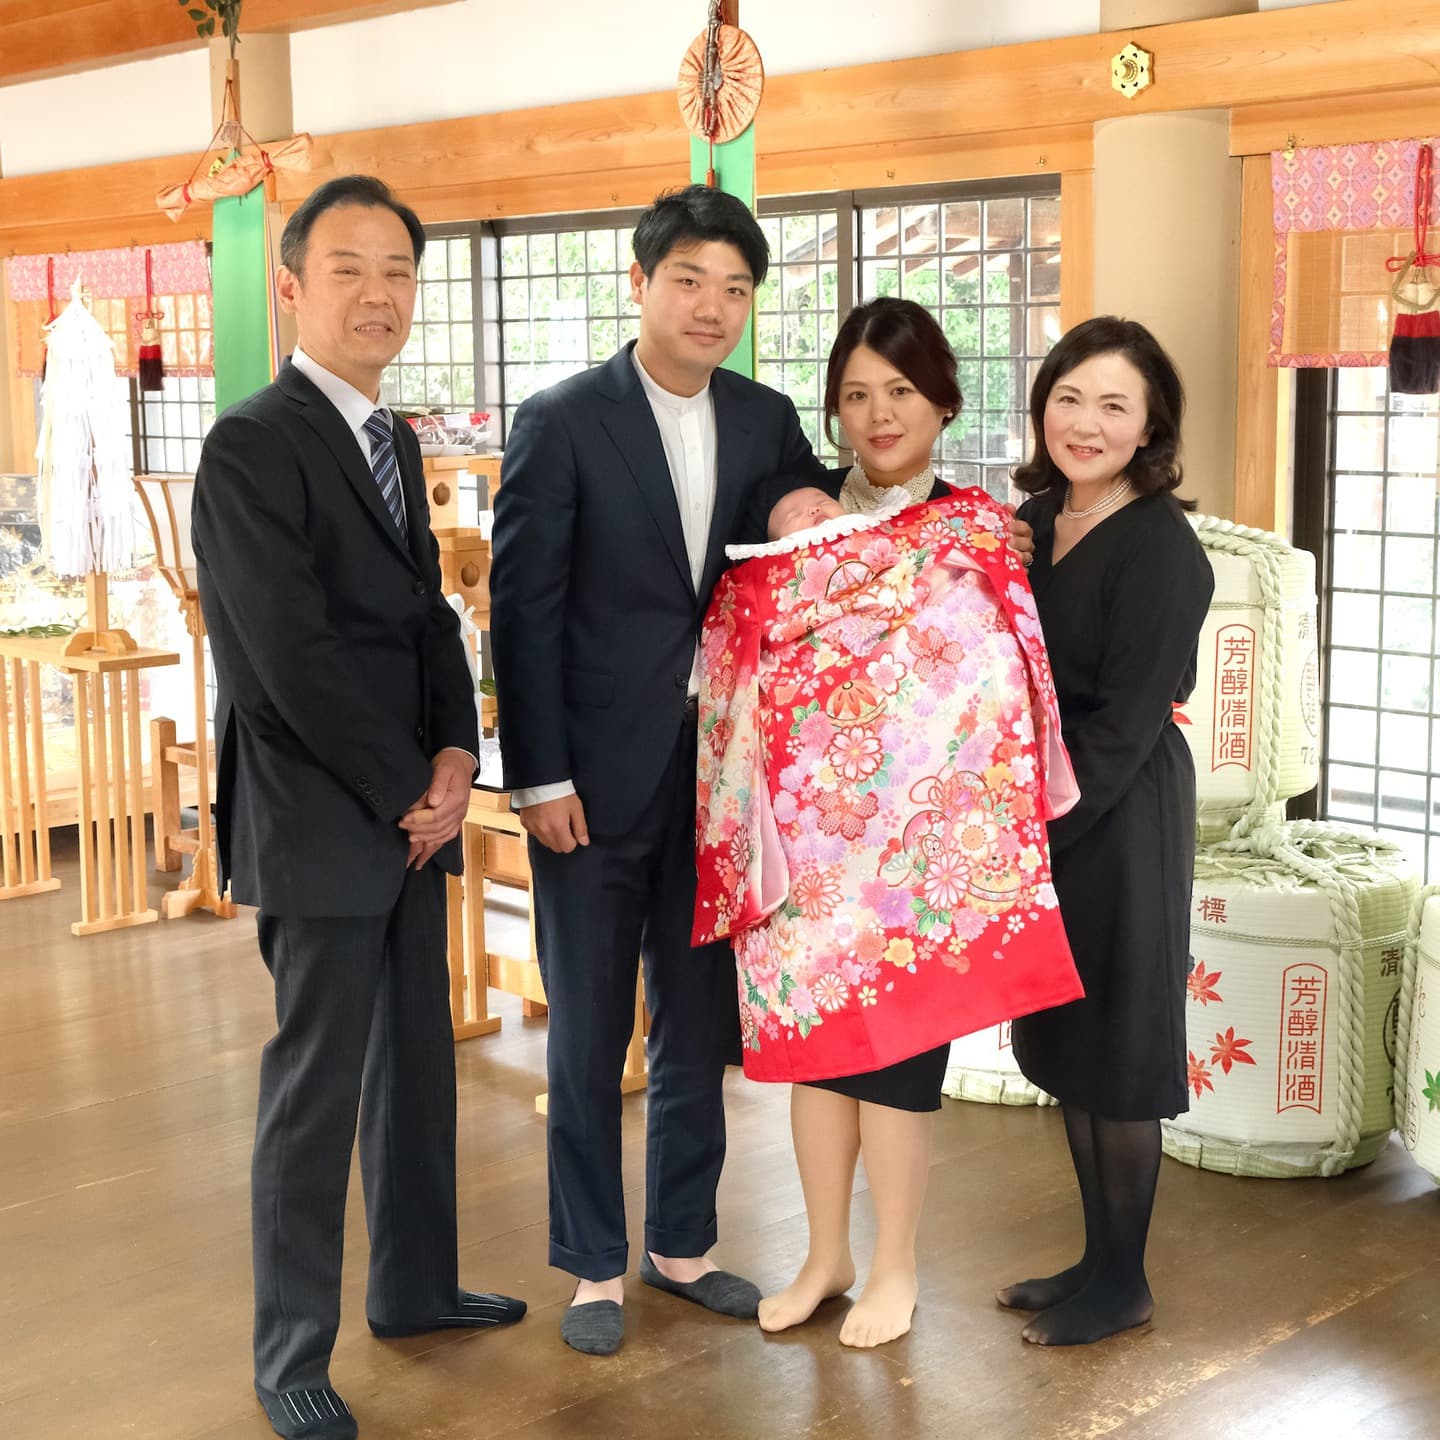 龍田神社でお宮参りをした赤ちゃんと家族